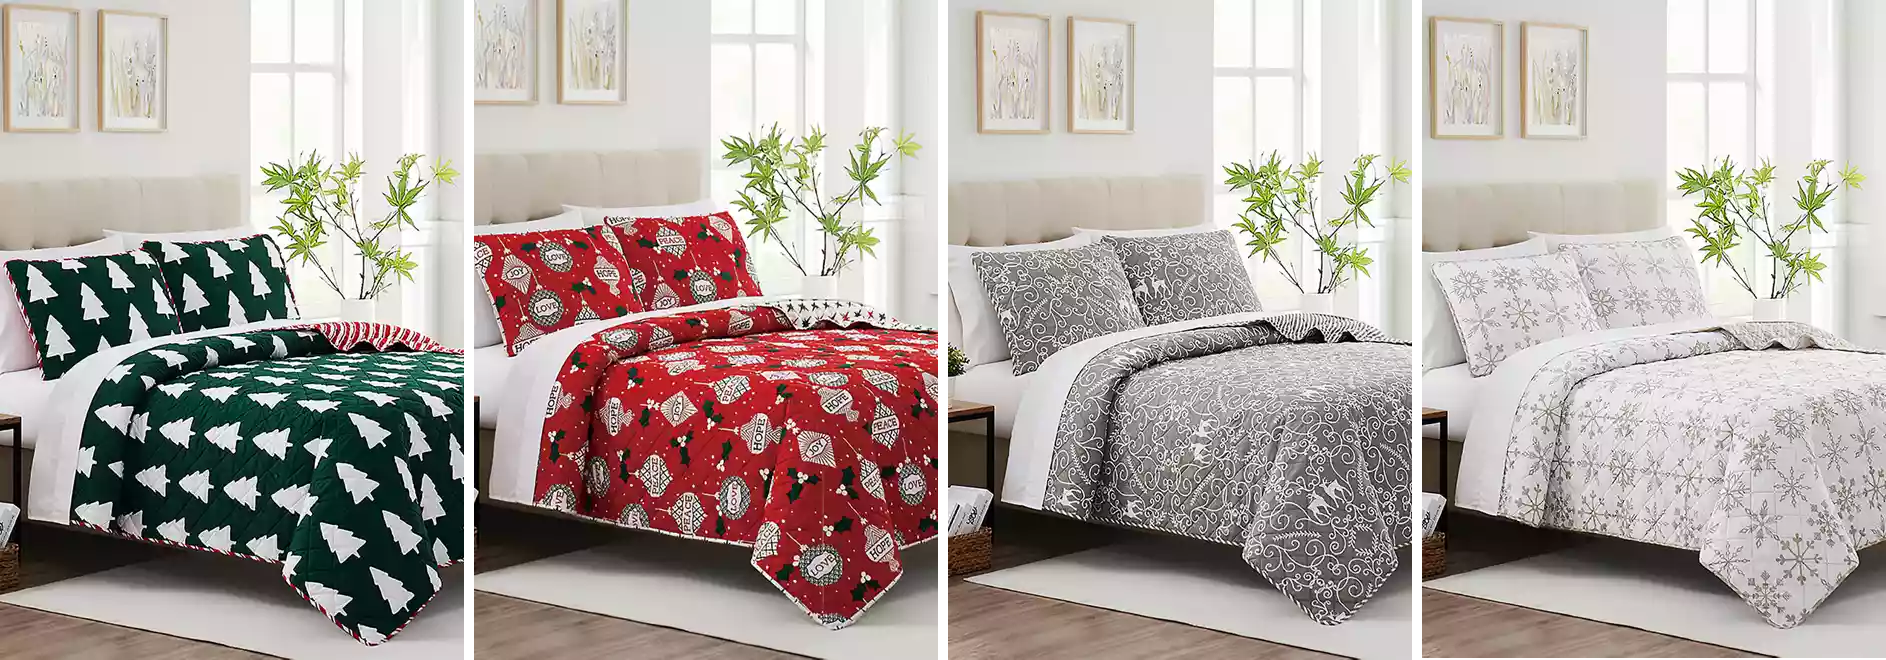 Belk – Bed in a Bag Comforter & Quilt Sets just .99!